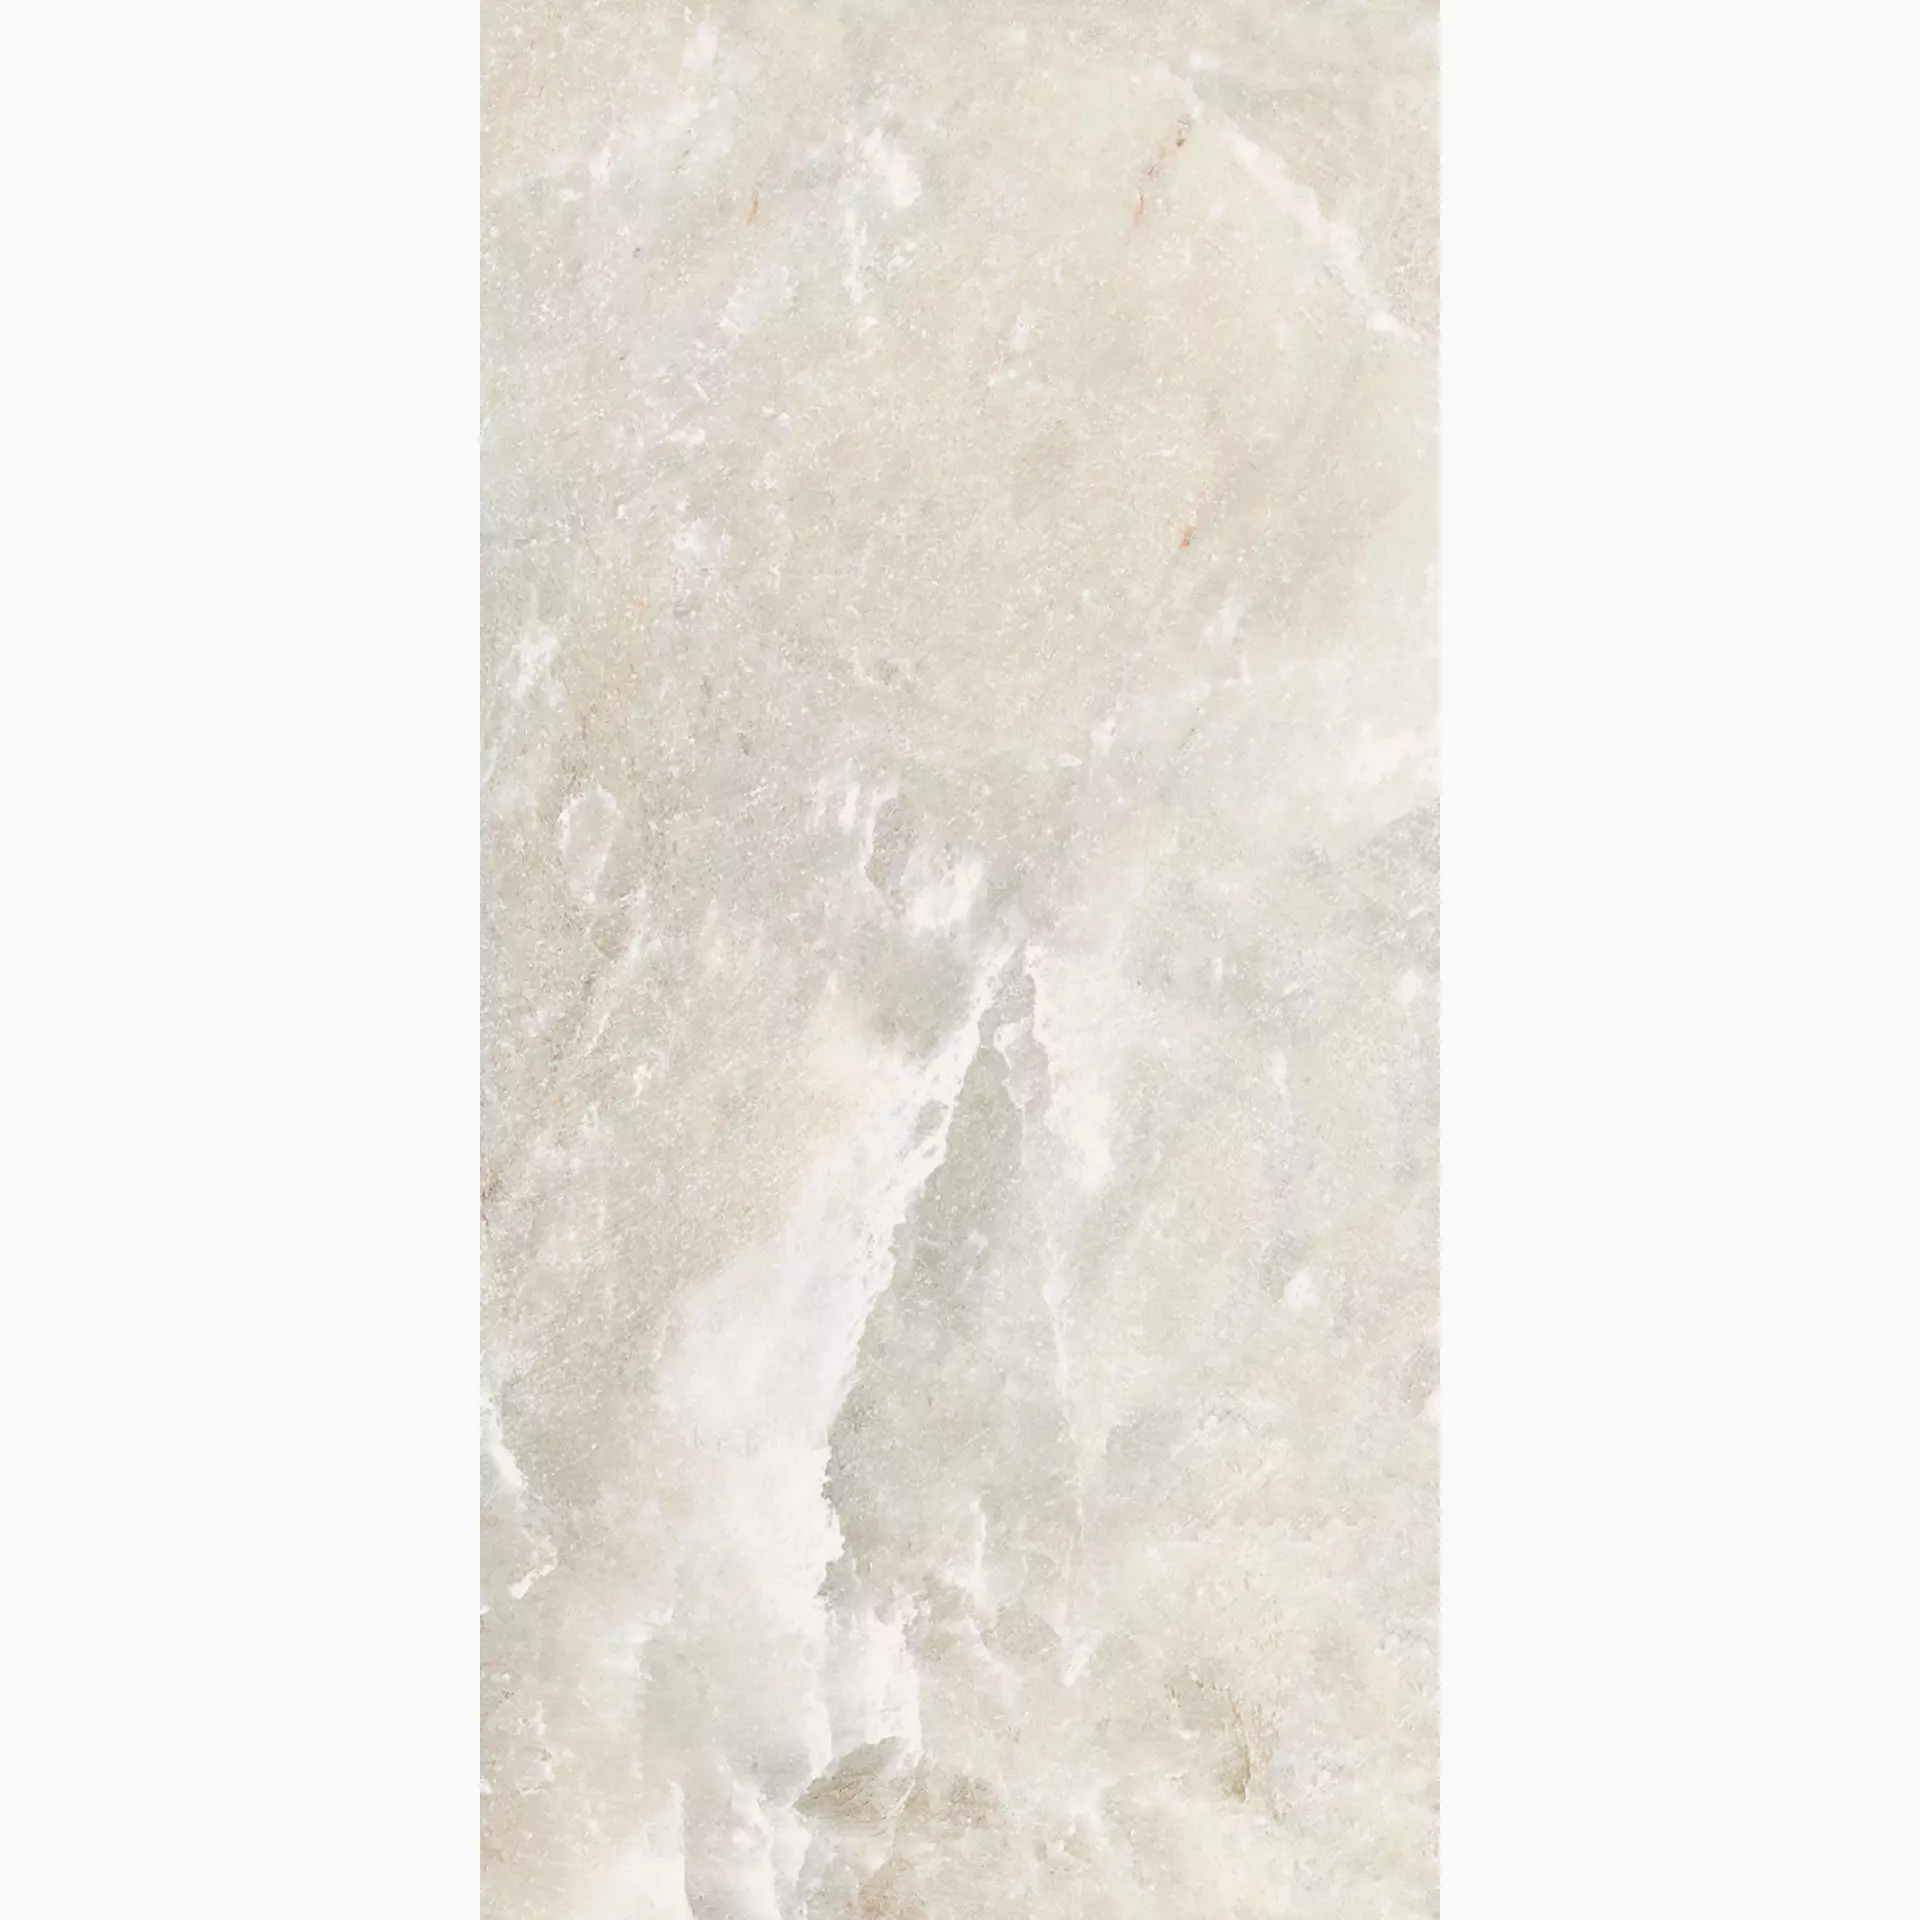 Florim Rock Salt White Gold Naturale – Matt 766929 60x120cm rectified 6mm